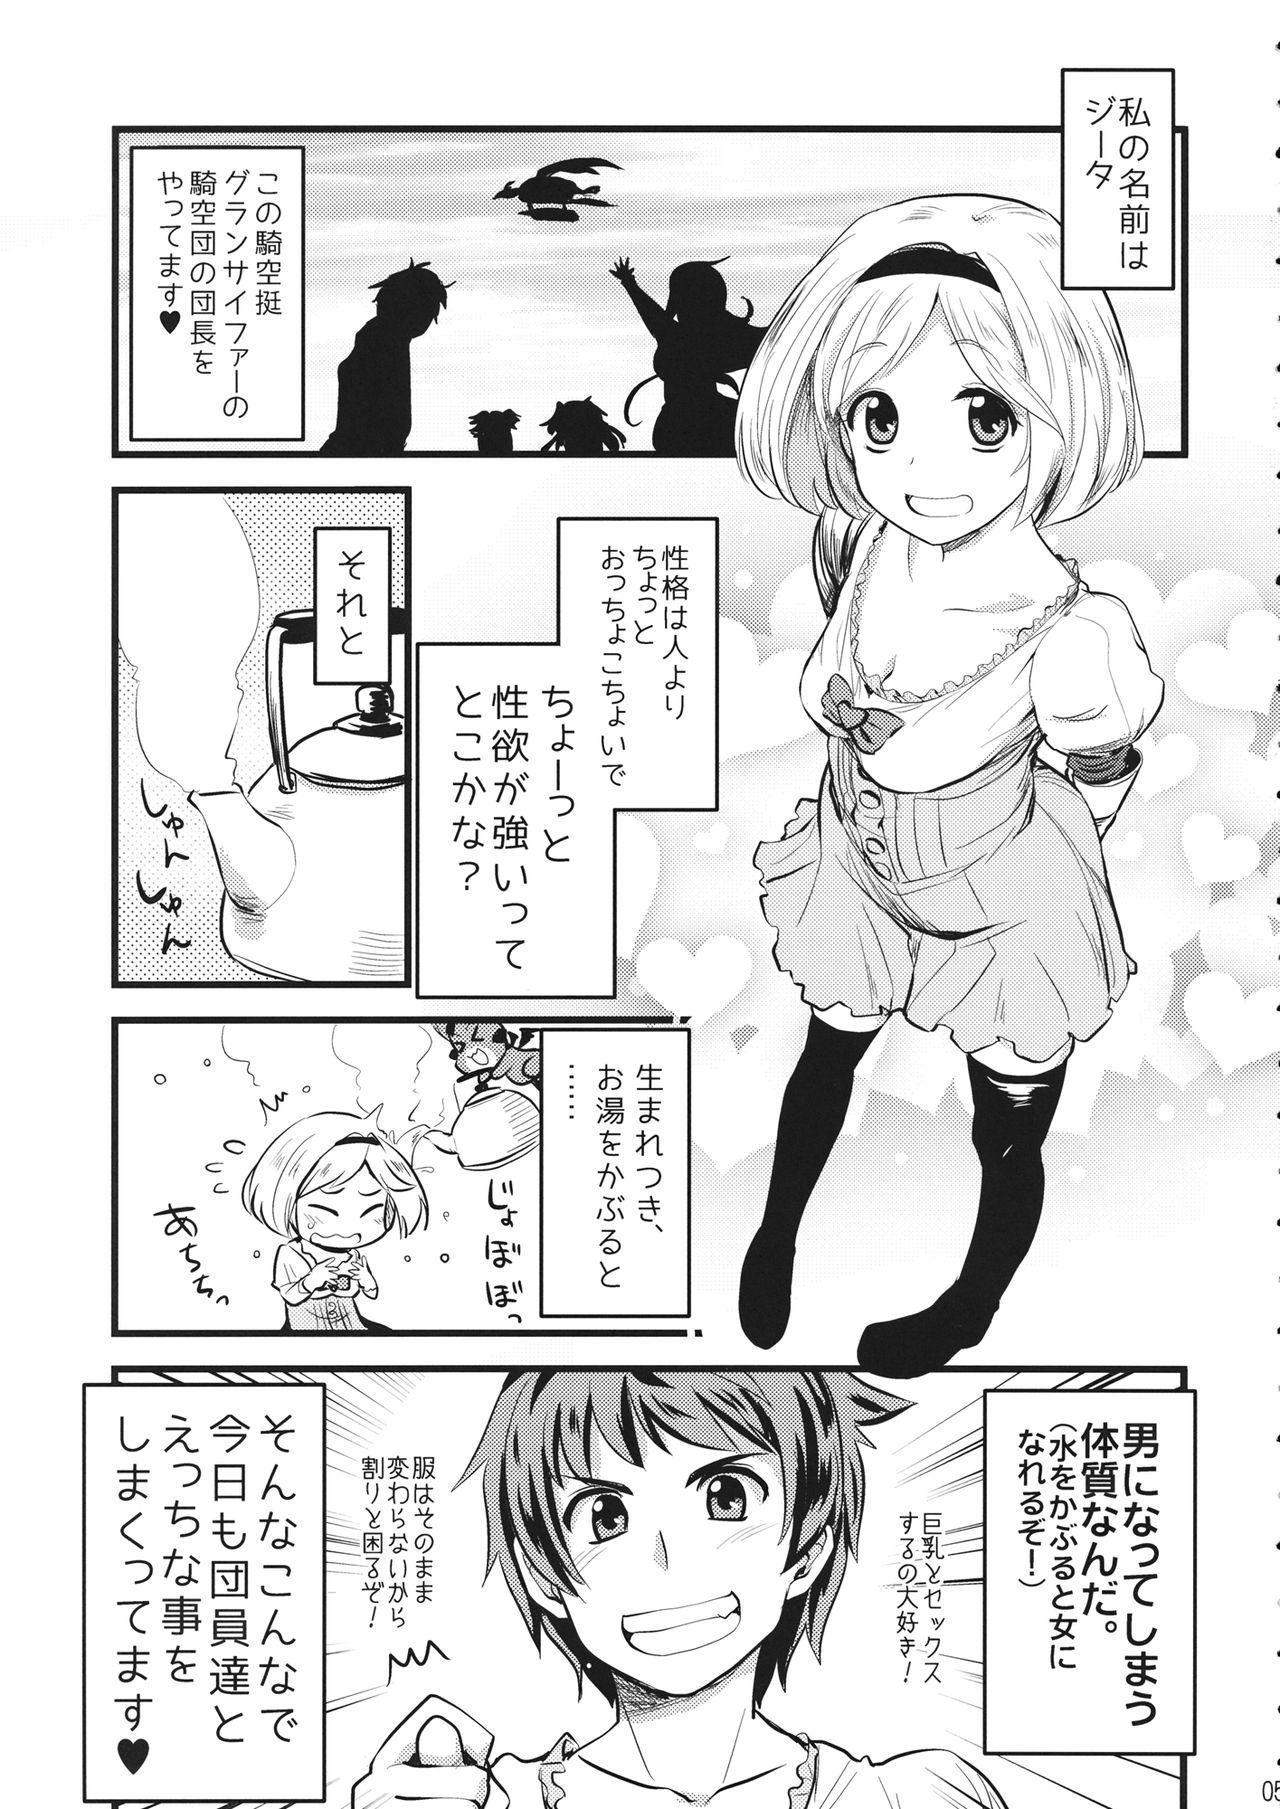 Tease Mizu o Kaburu to Onna ni Nacchau Fuzaketa Taishitsu. - Granblue fantasy Kinky - Page 4